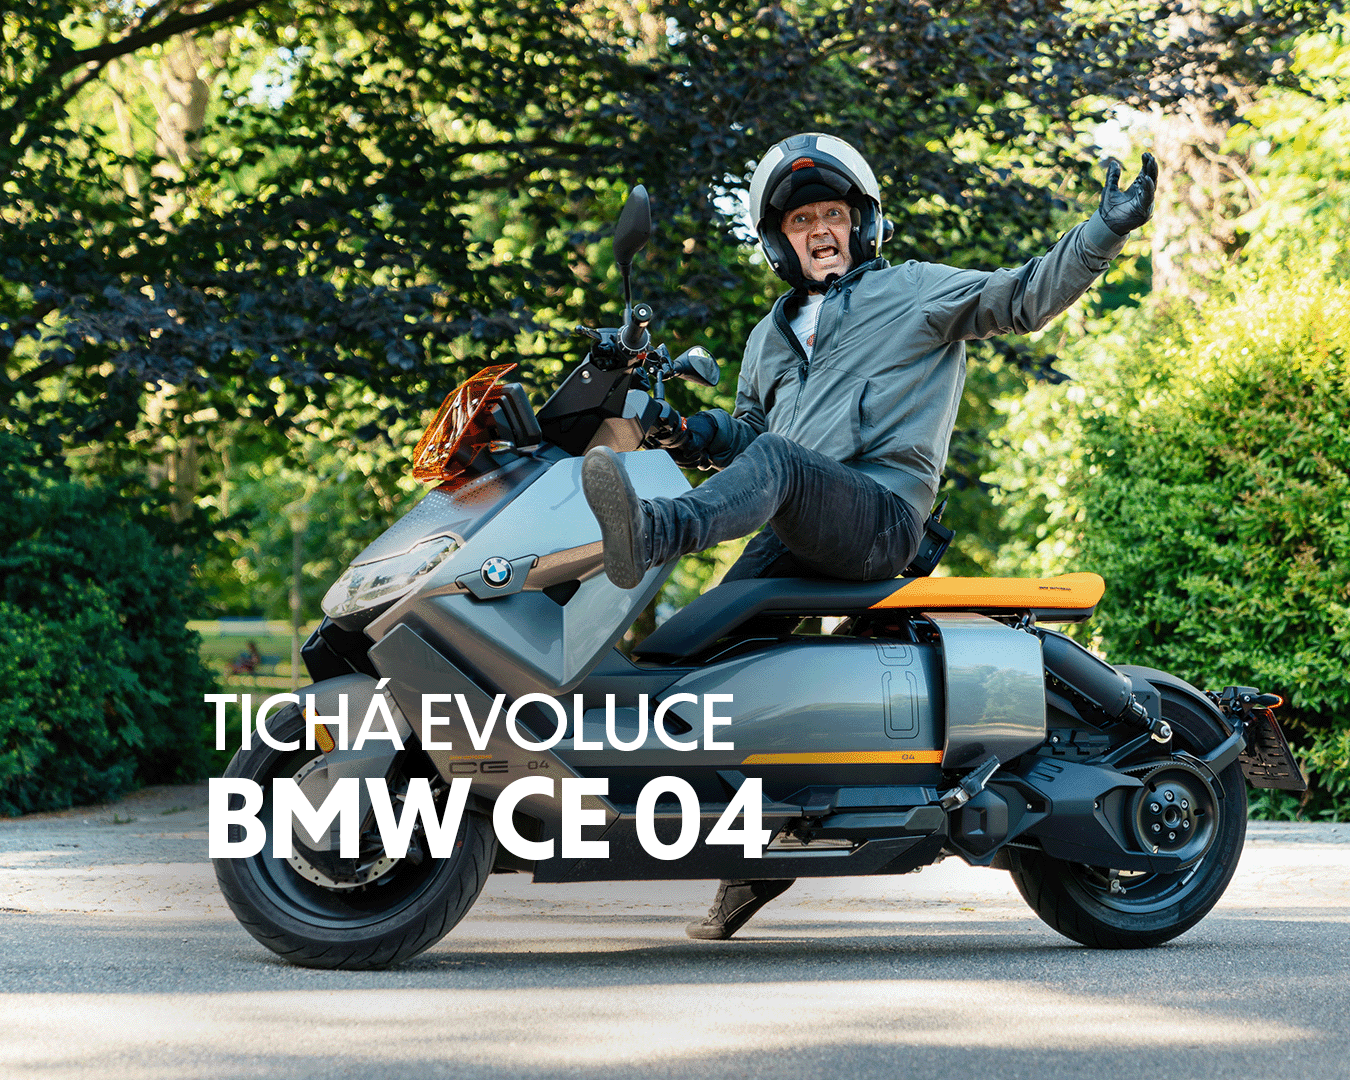 MOTOBARTHOVINY | Tichá evoluce BMW CE 04